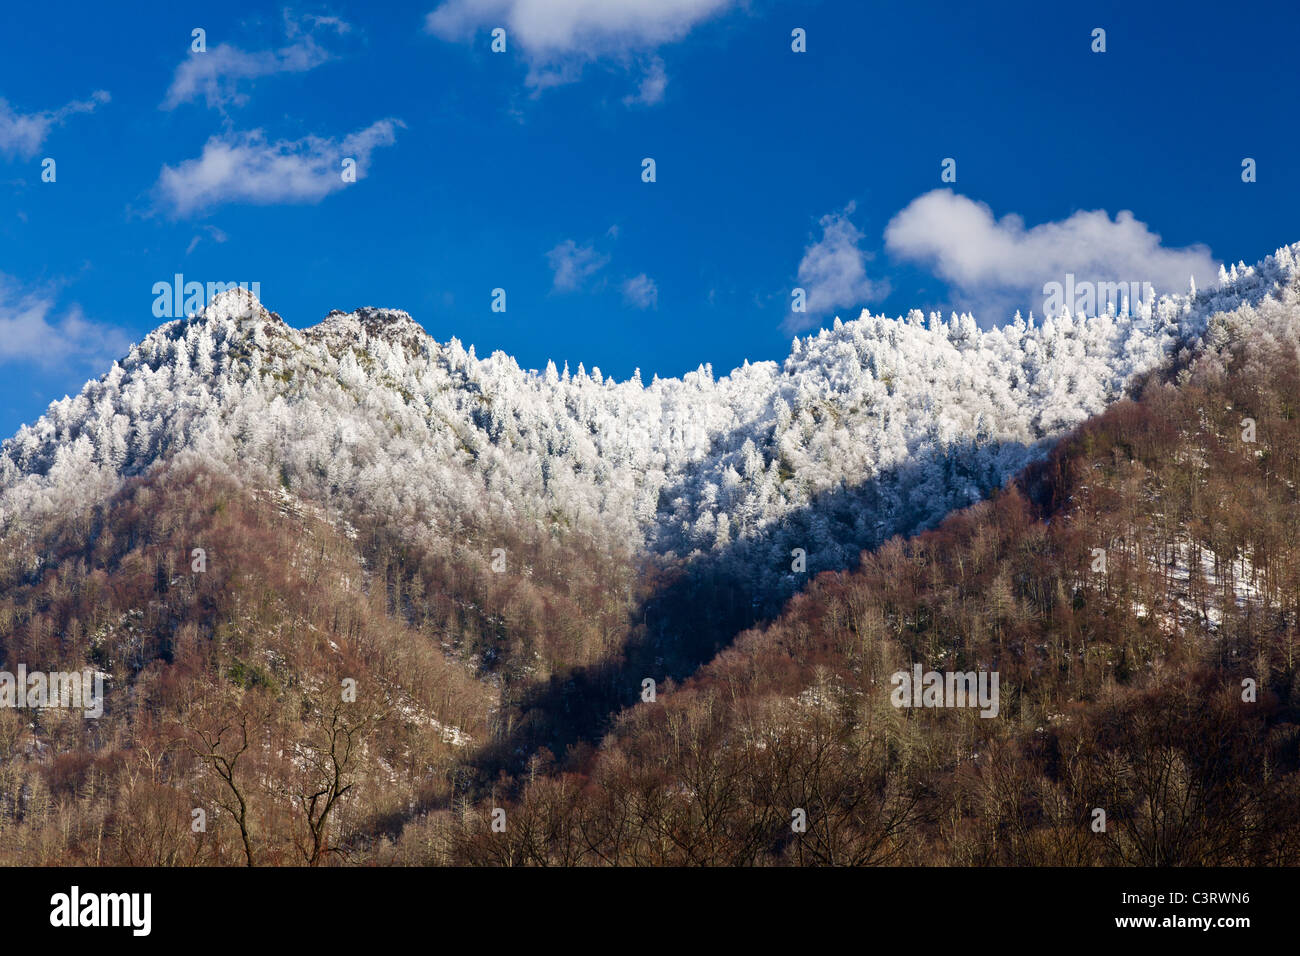 Great Smoky Mountains National Park, USA - Vue de dessus de cheminée recouverte de neige Banque D'Images